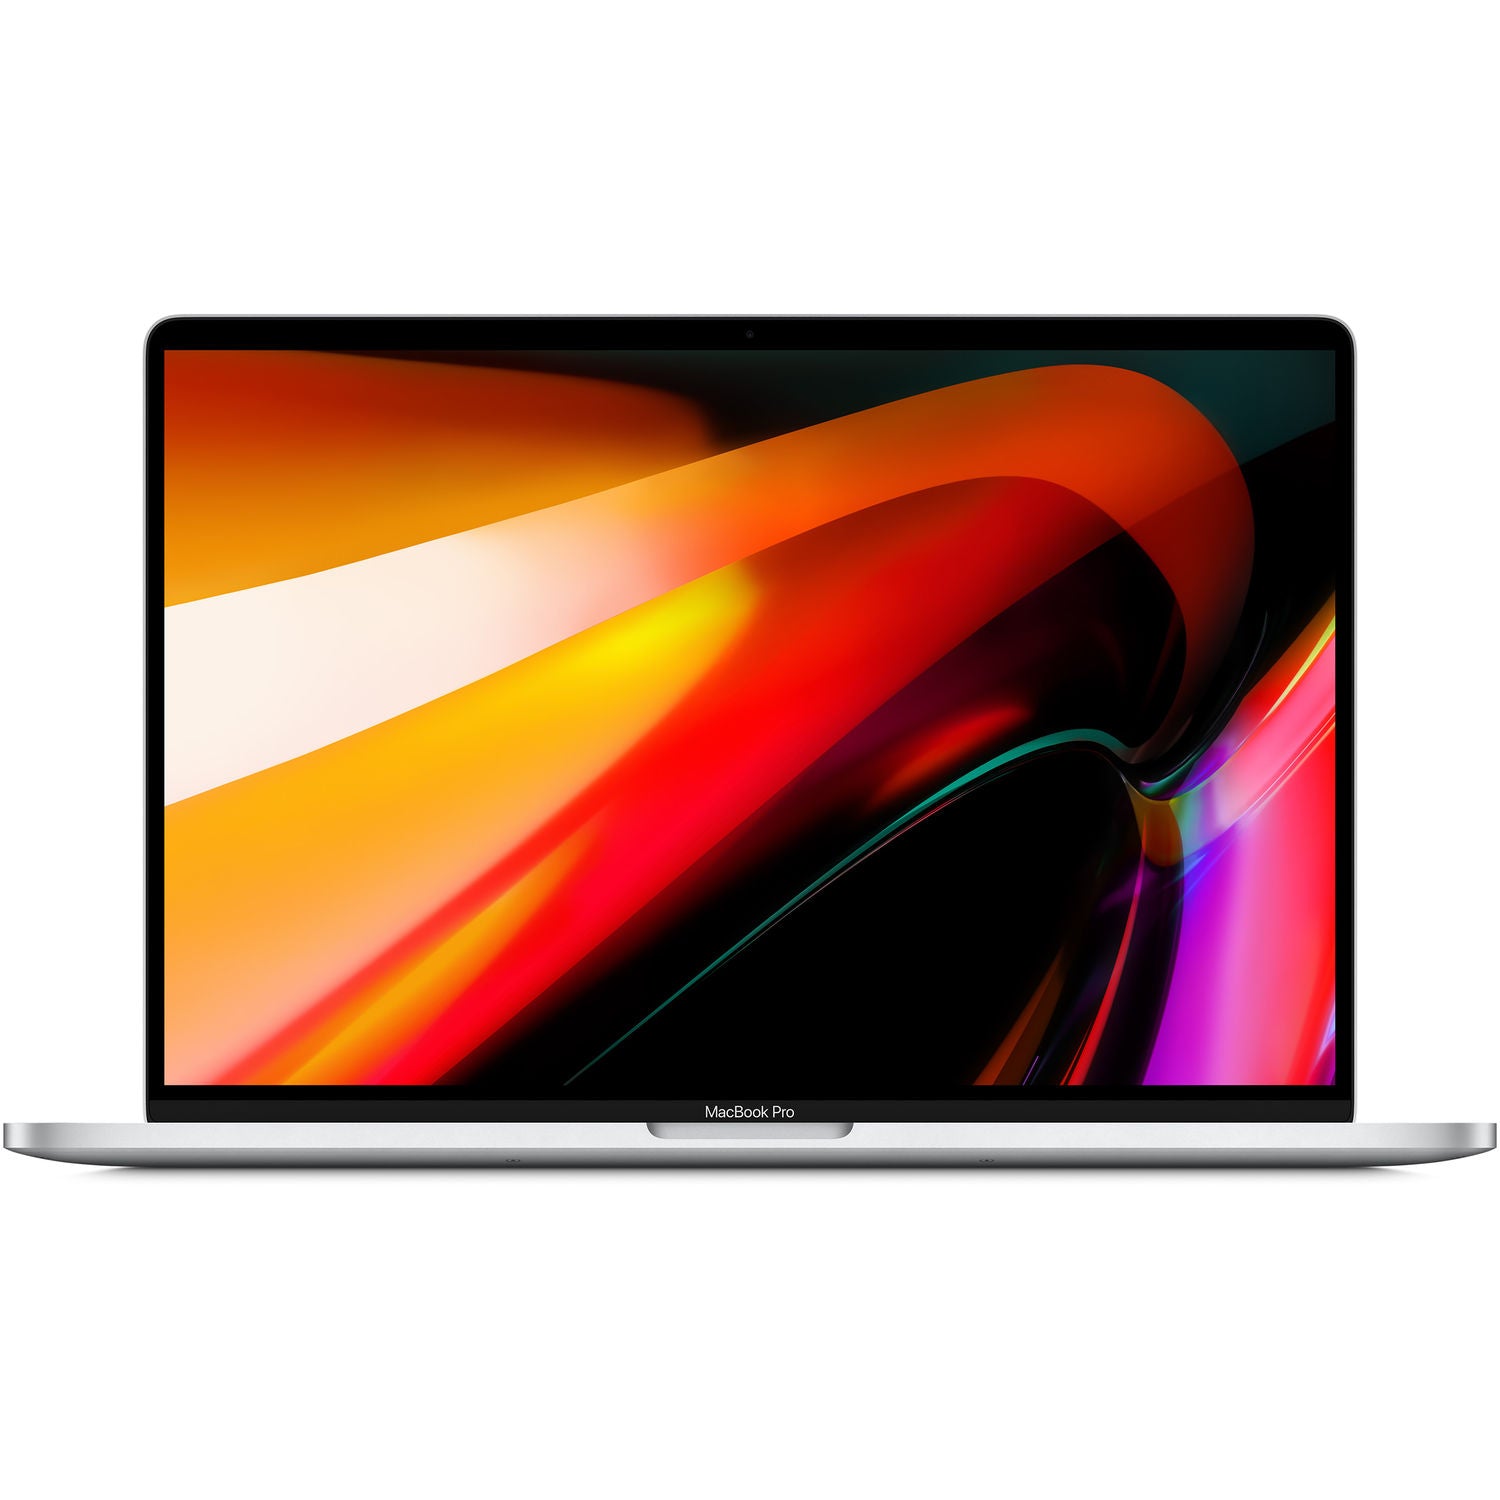 Apple MacBook Pro 16-in 2.4GHz 8-core i9 64GB 512GB 5500M 4GB Silver (CTO)